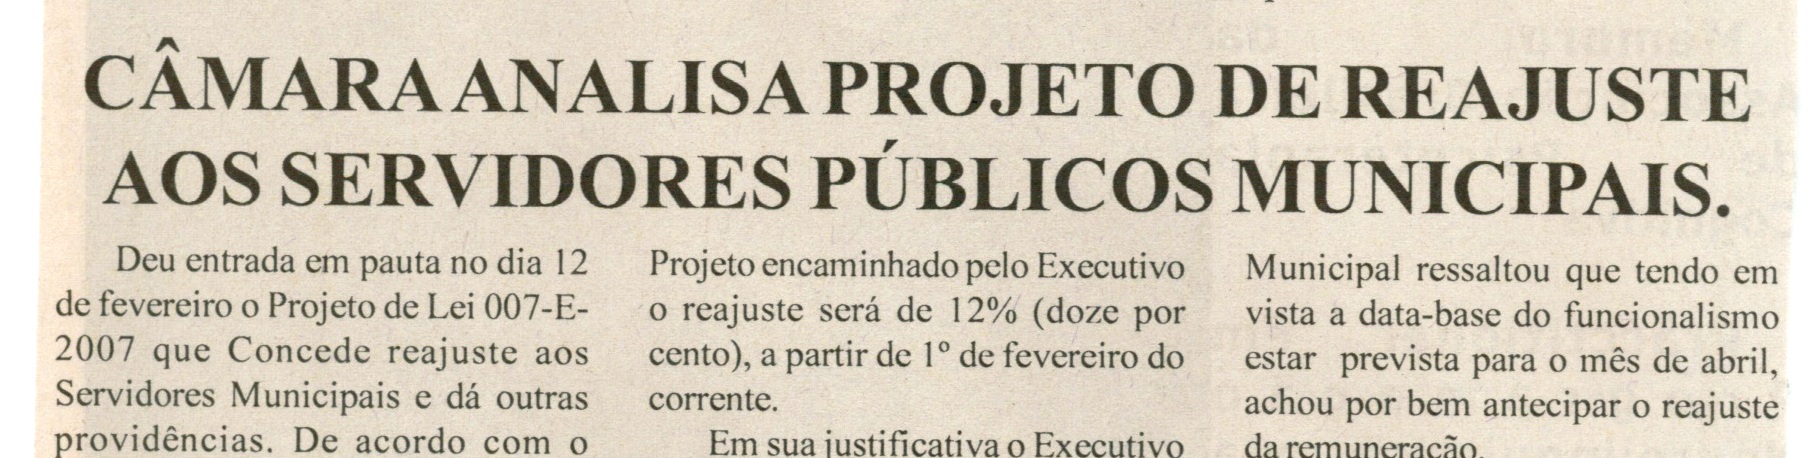 Câmara analisa projeto de reajuste aos servidores públicos municipais. Jornal Nova Gazeta, Conselheiro Lafaiete, 16 fev. 2008, 501ª ed., p.20.